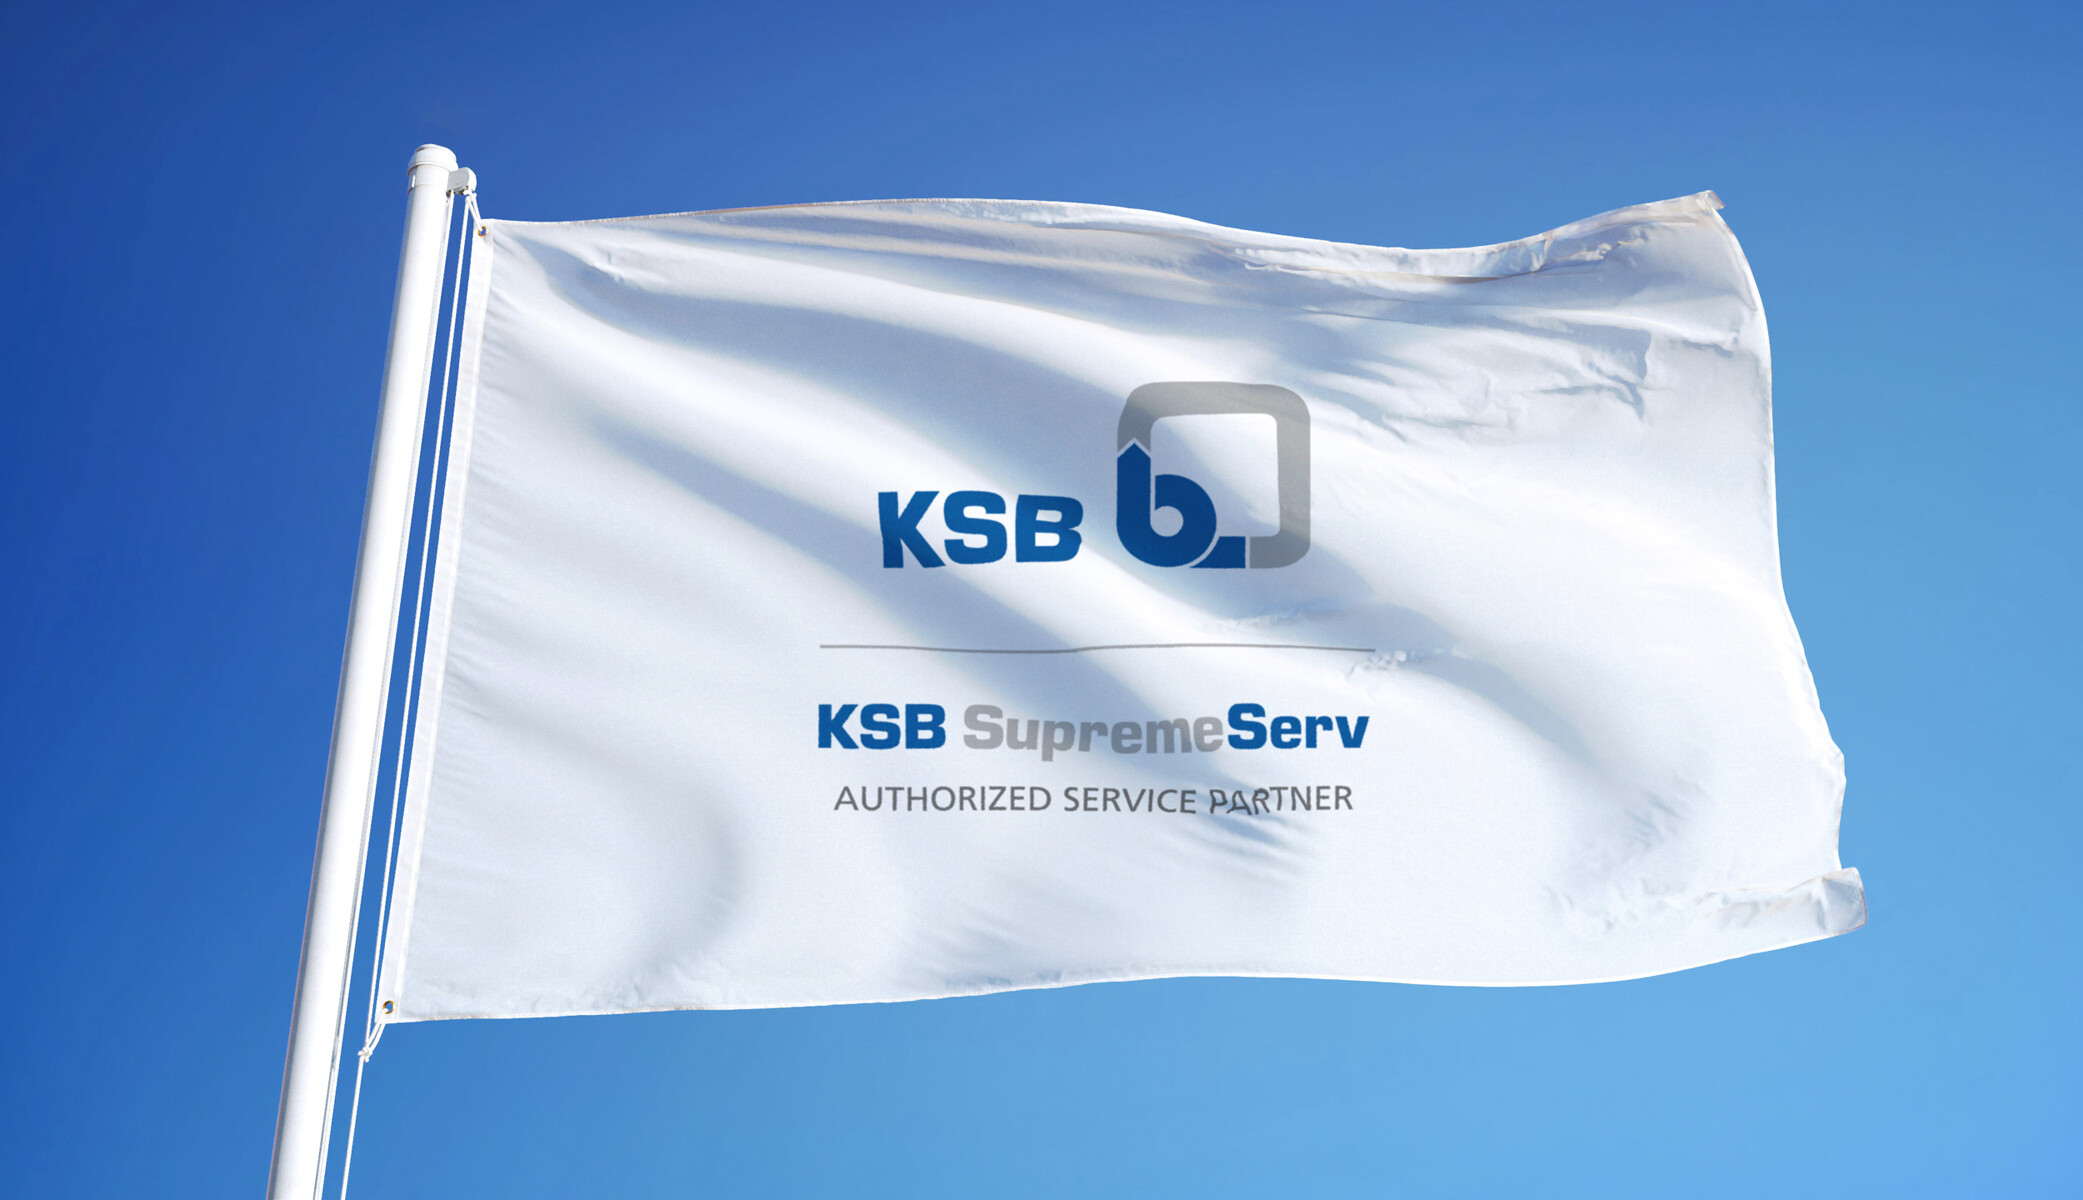 공인 KSB 서비스 파트너의 브랜드 마크